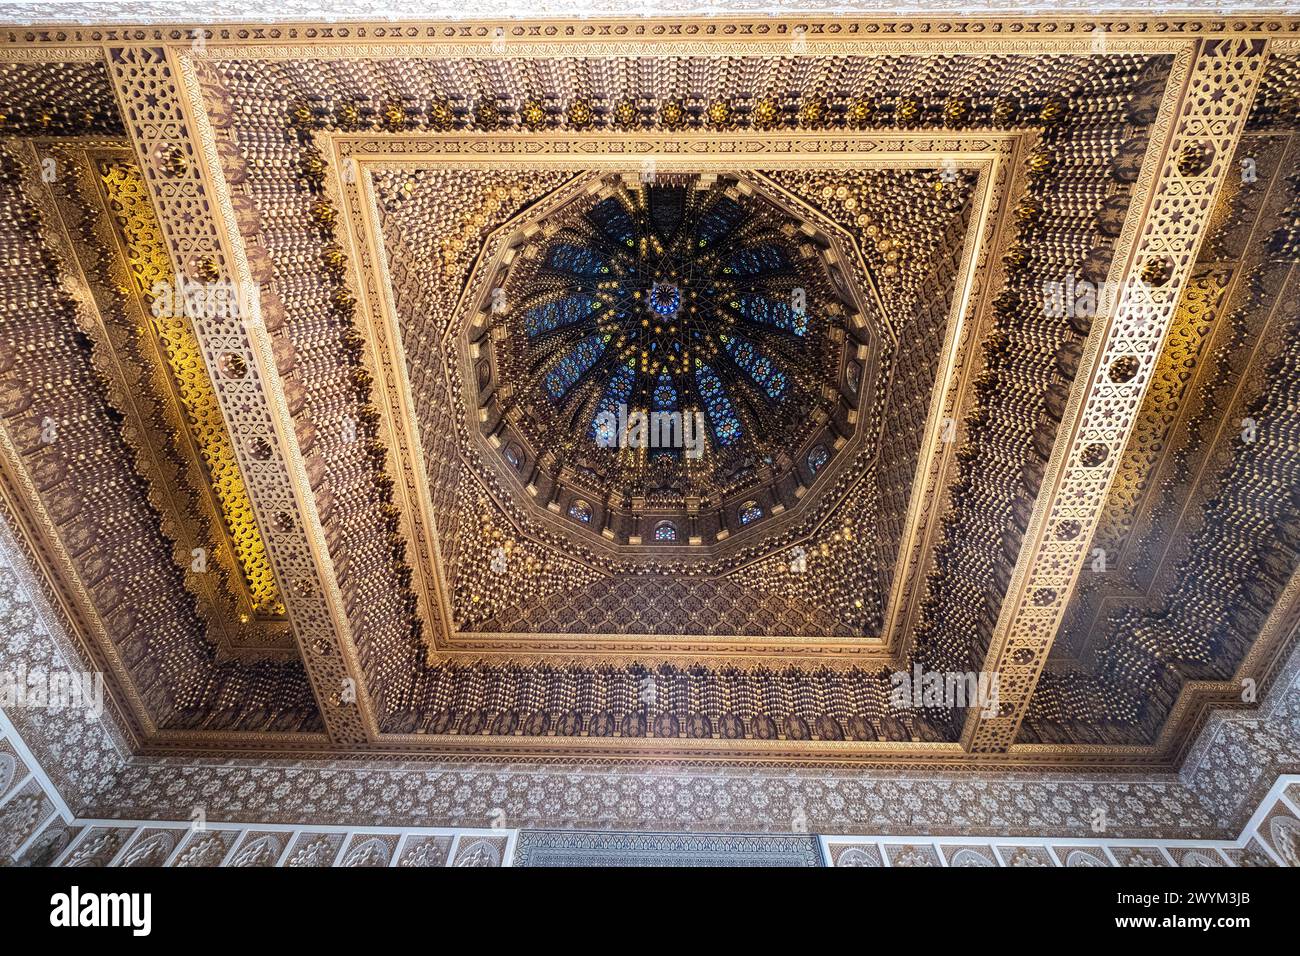 Plafond du Mausolée royal de Mohammed V à Rabat, la capitale du Maroc. Il dispose de riches et belles décorations arabesque en marbre blanc, w Banque D'Images